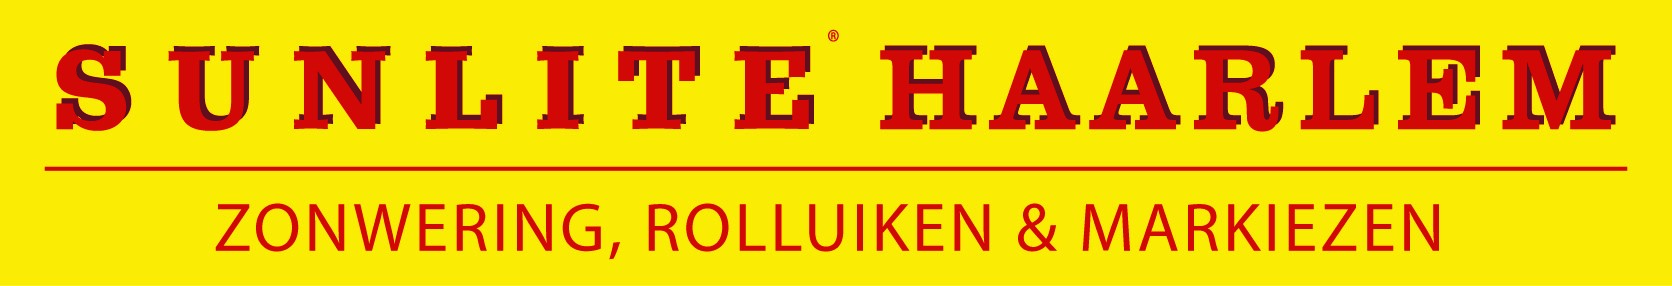 Zonnescherm Haarlem logo